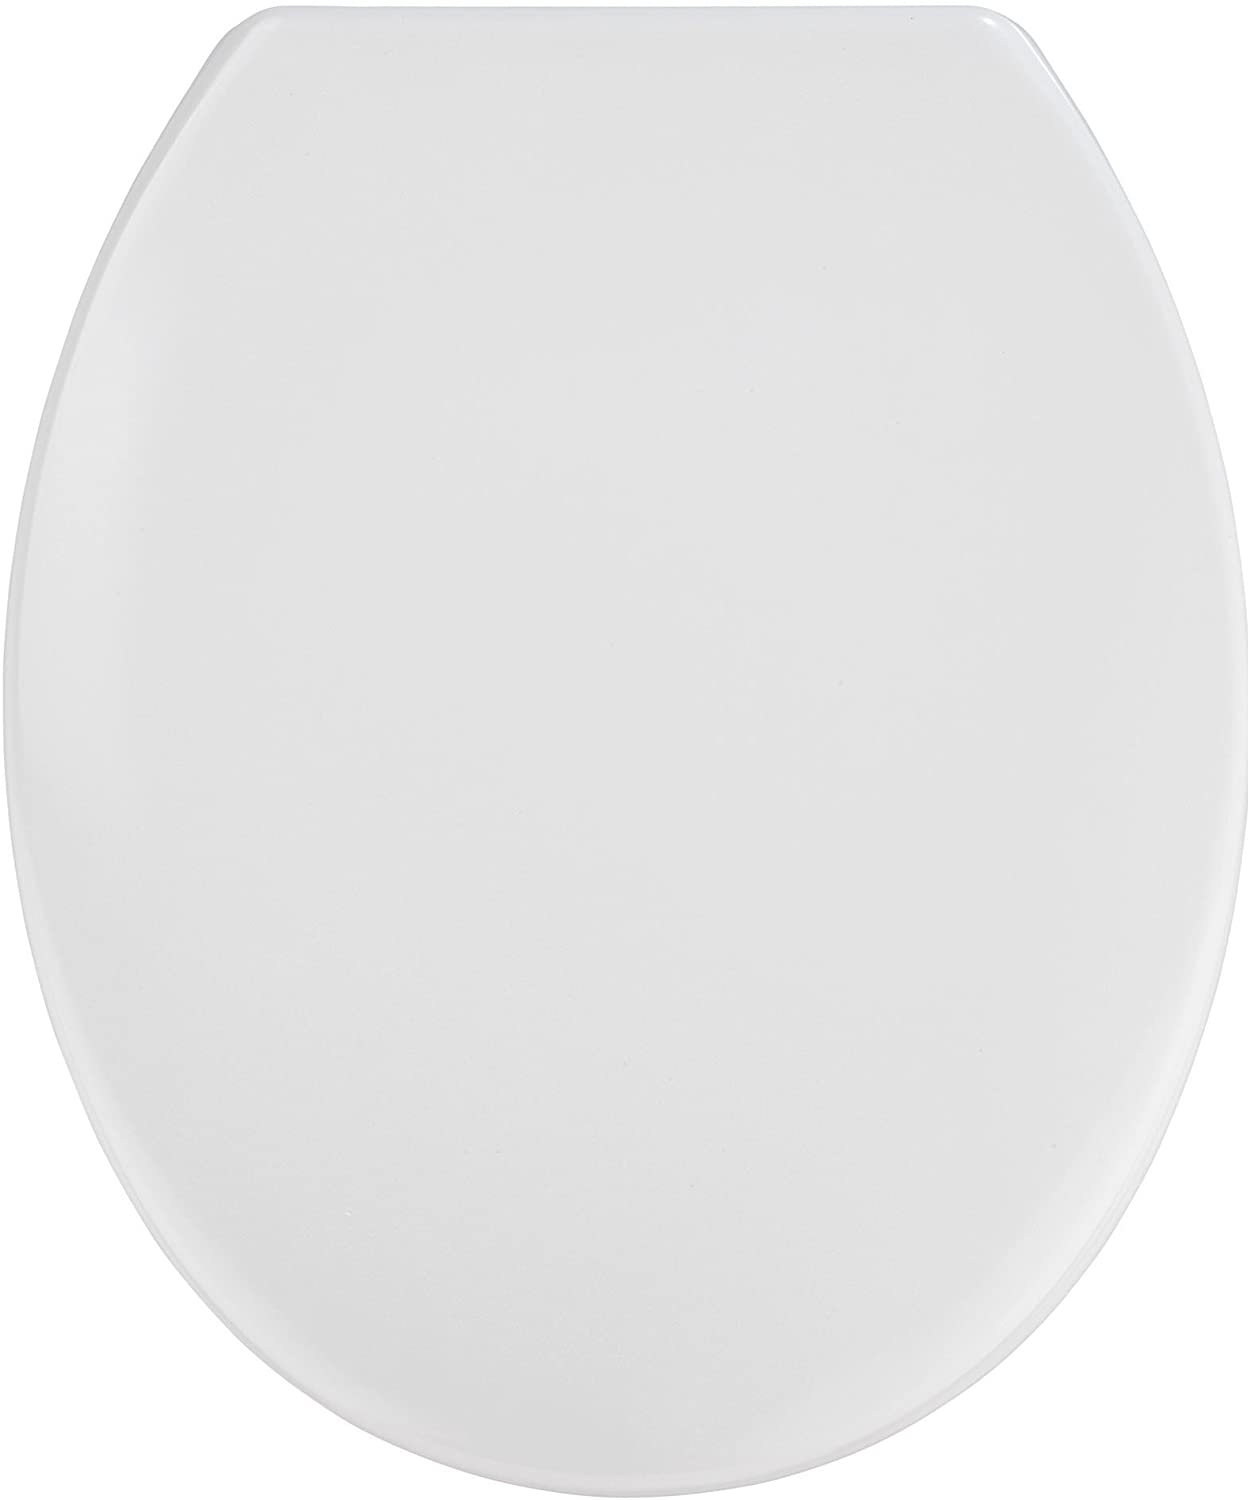 WC-Sitz Vigone Weiß - Antibakterieller Toilettensitz, rostfreie Edelstahlbefestigung, Duroplast, 37.5 x 45 cm, Weiß